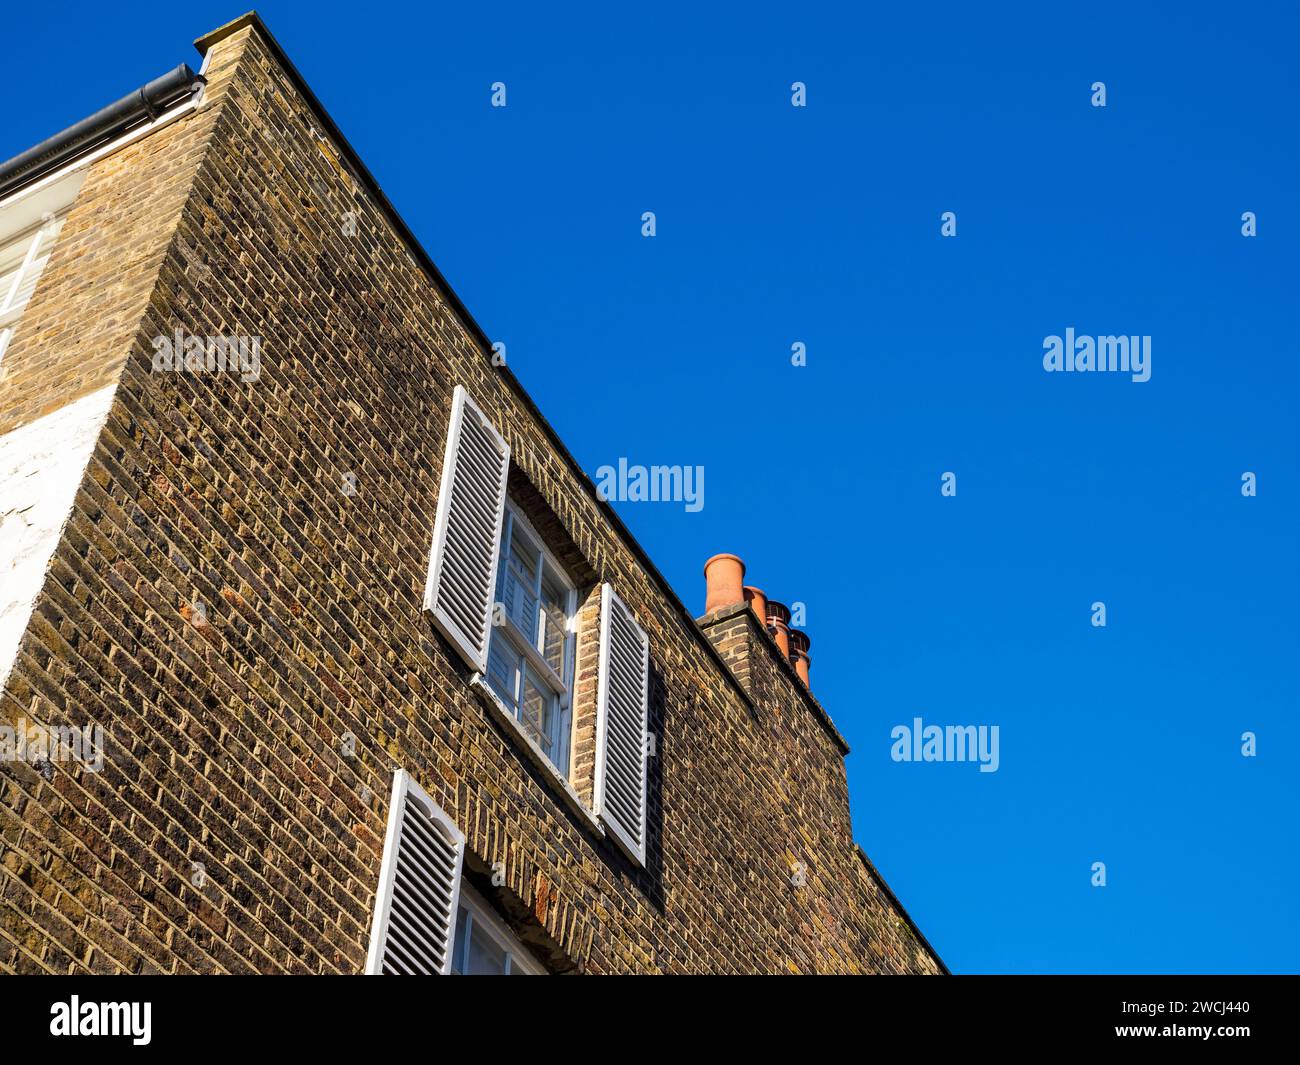 Maisons de luxe avec fenêtres à guillotine, The Mount, Hampstead, Londres, Angleterre, UK, GB. Banque D'Images